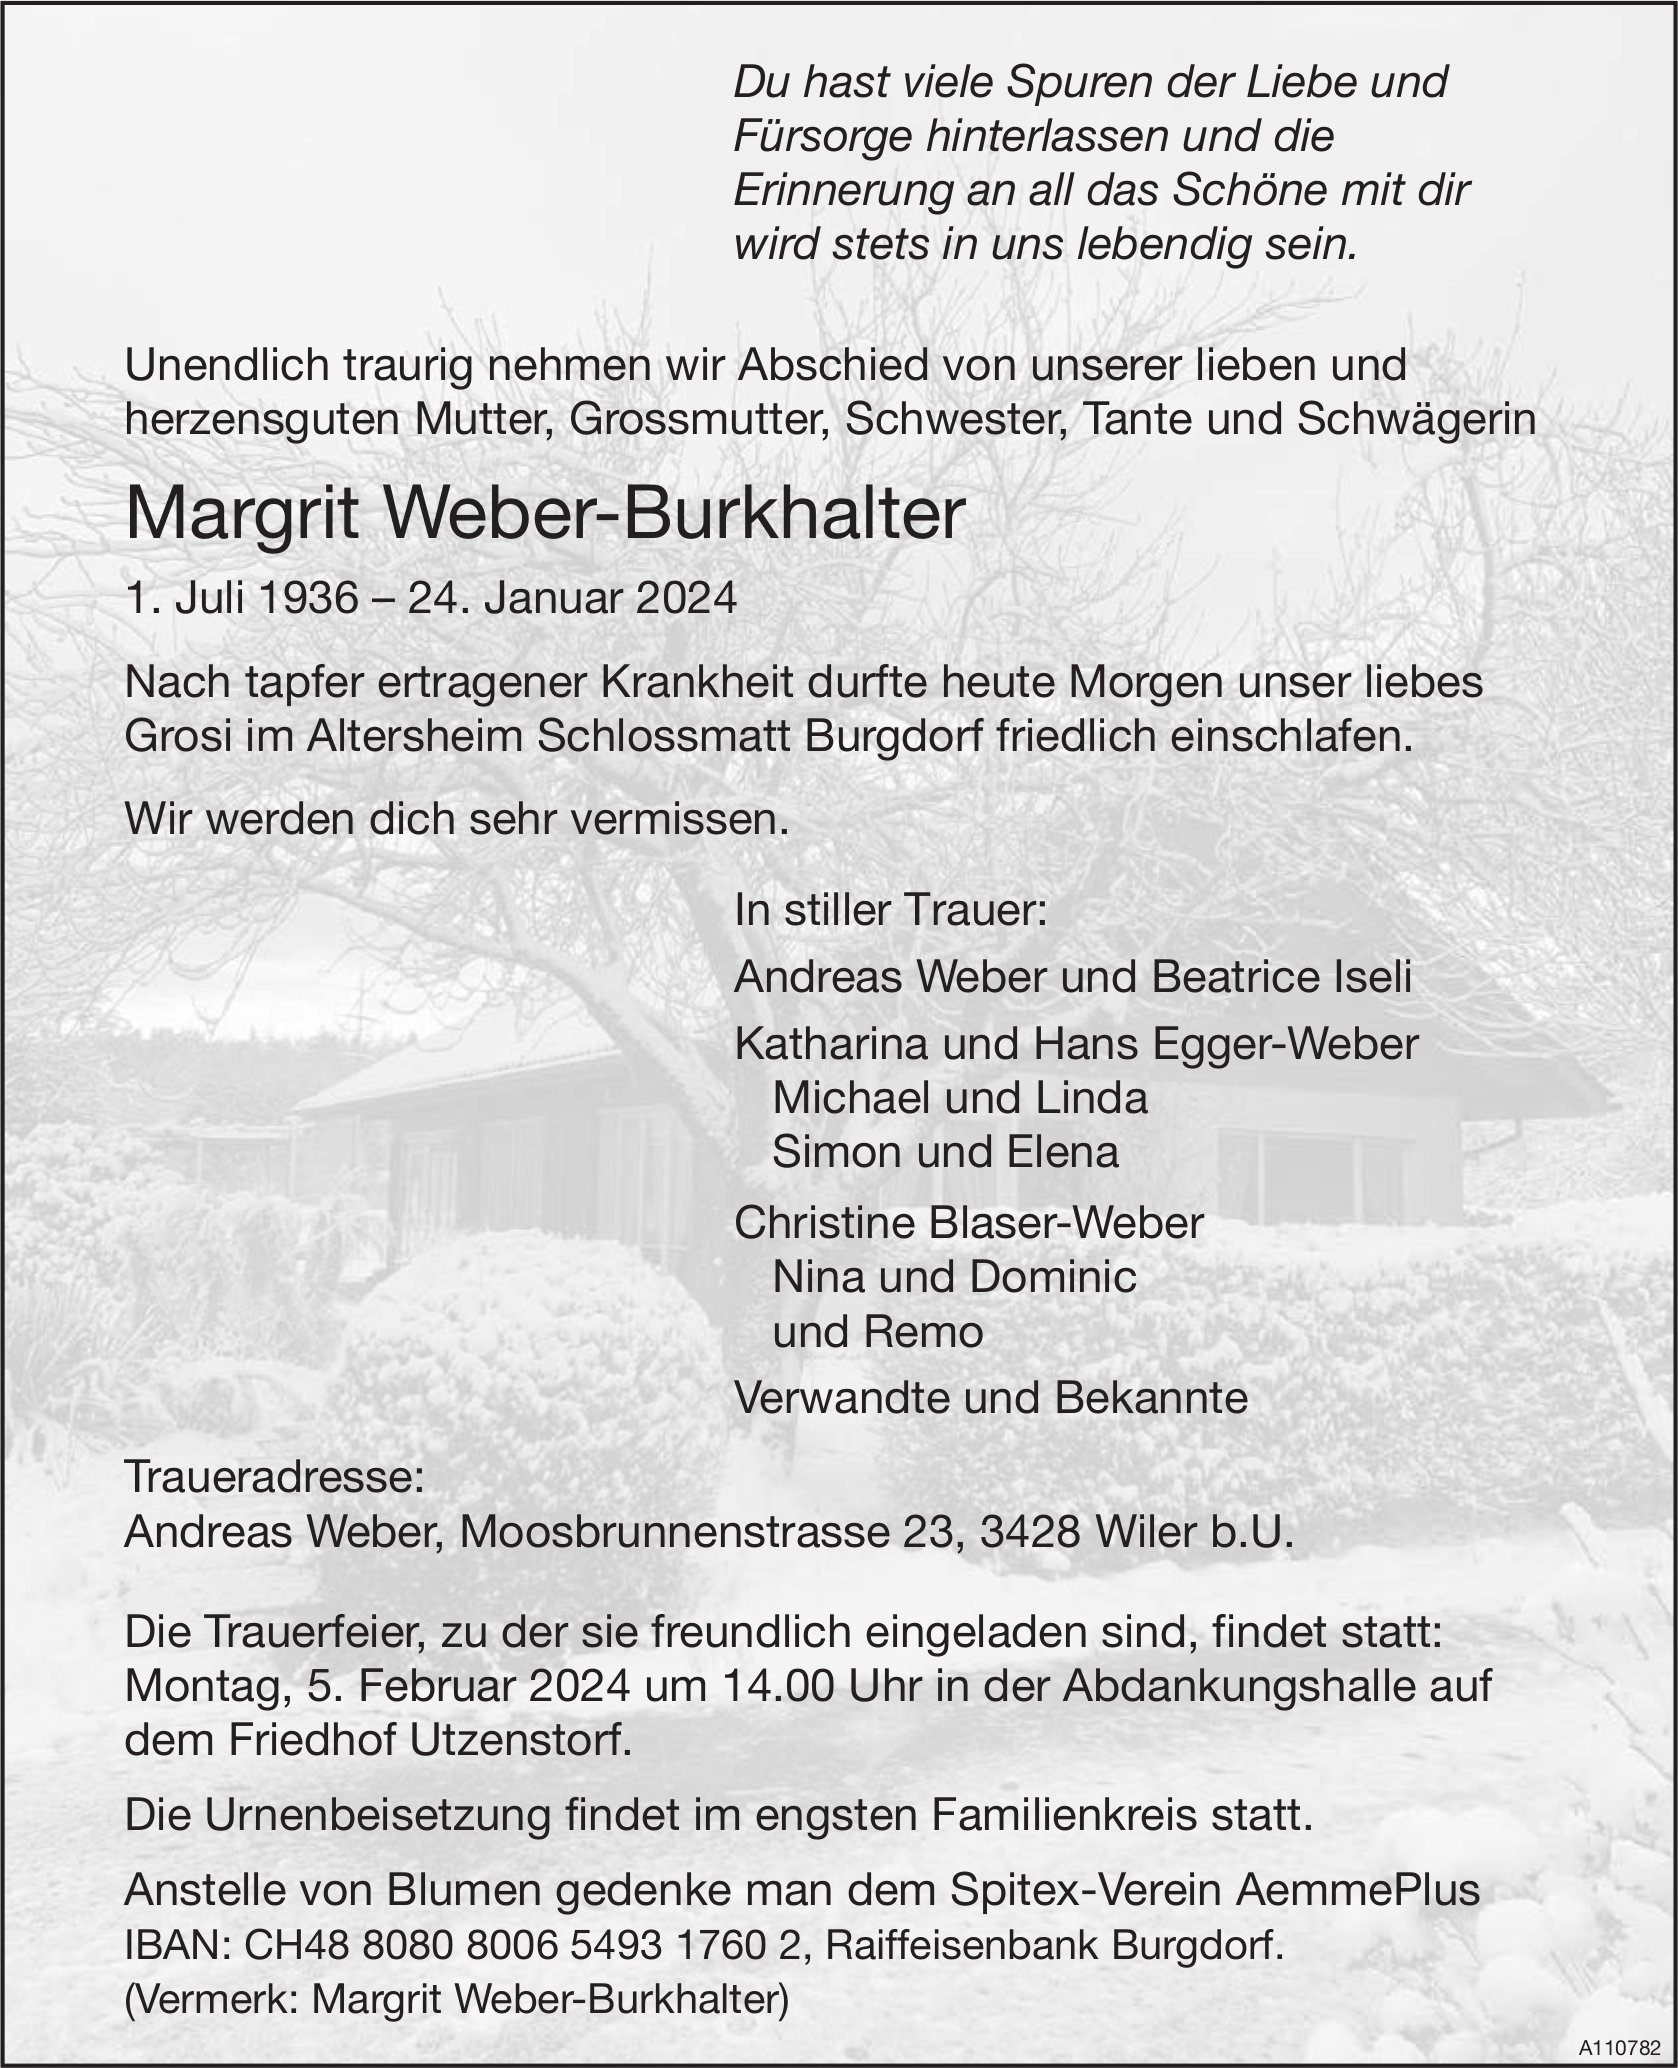 Margrit Weber-Burkhalter, Januar 2024 / TA